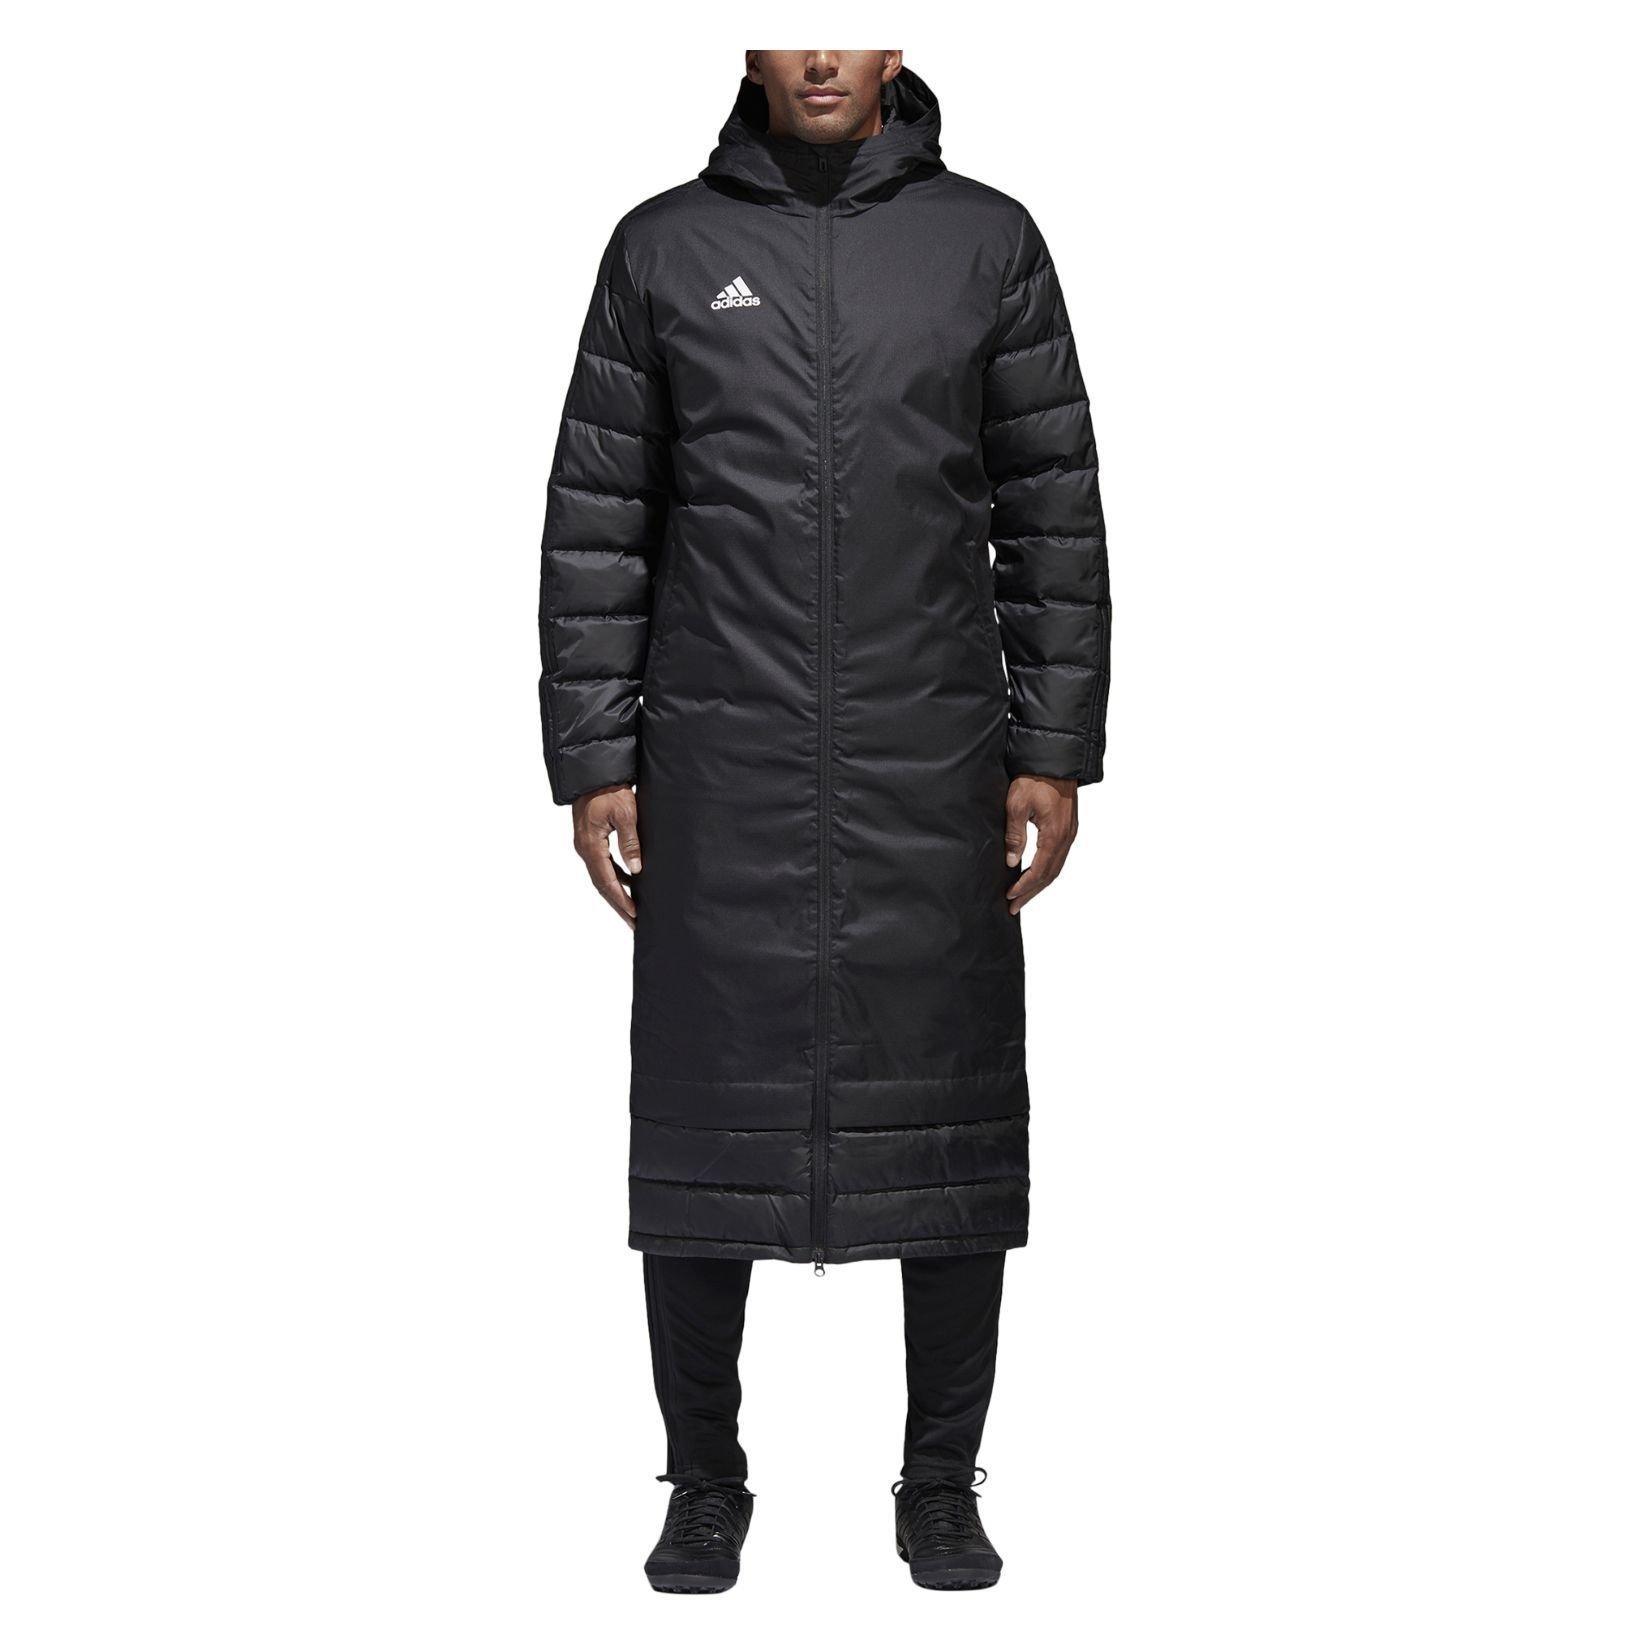 adidas Winter Coat 18 - Kitlocker.com